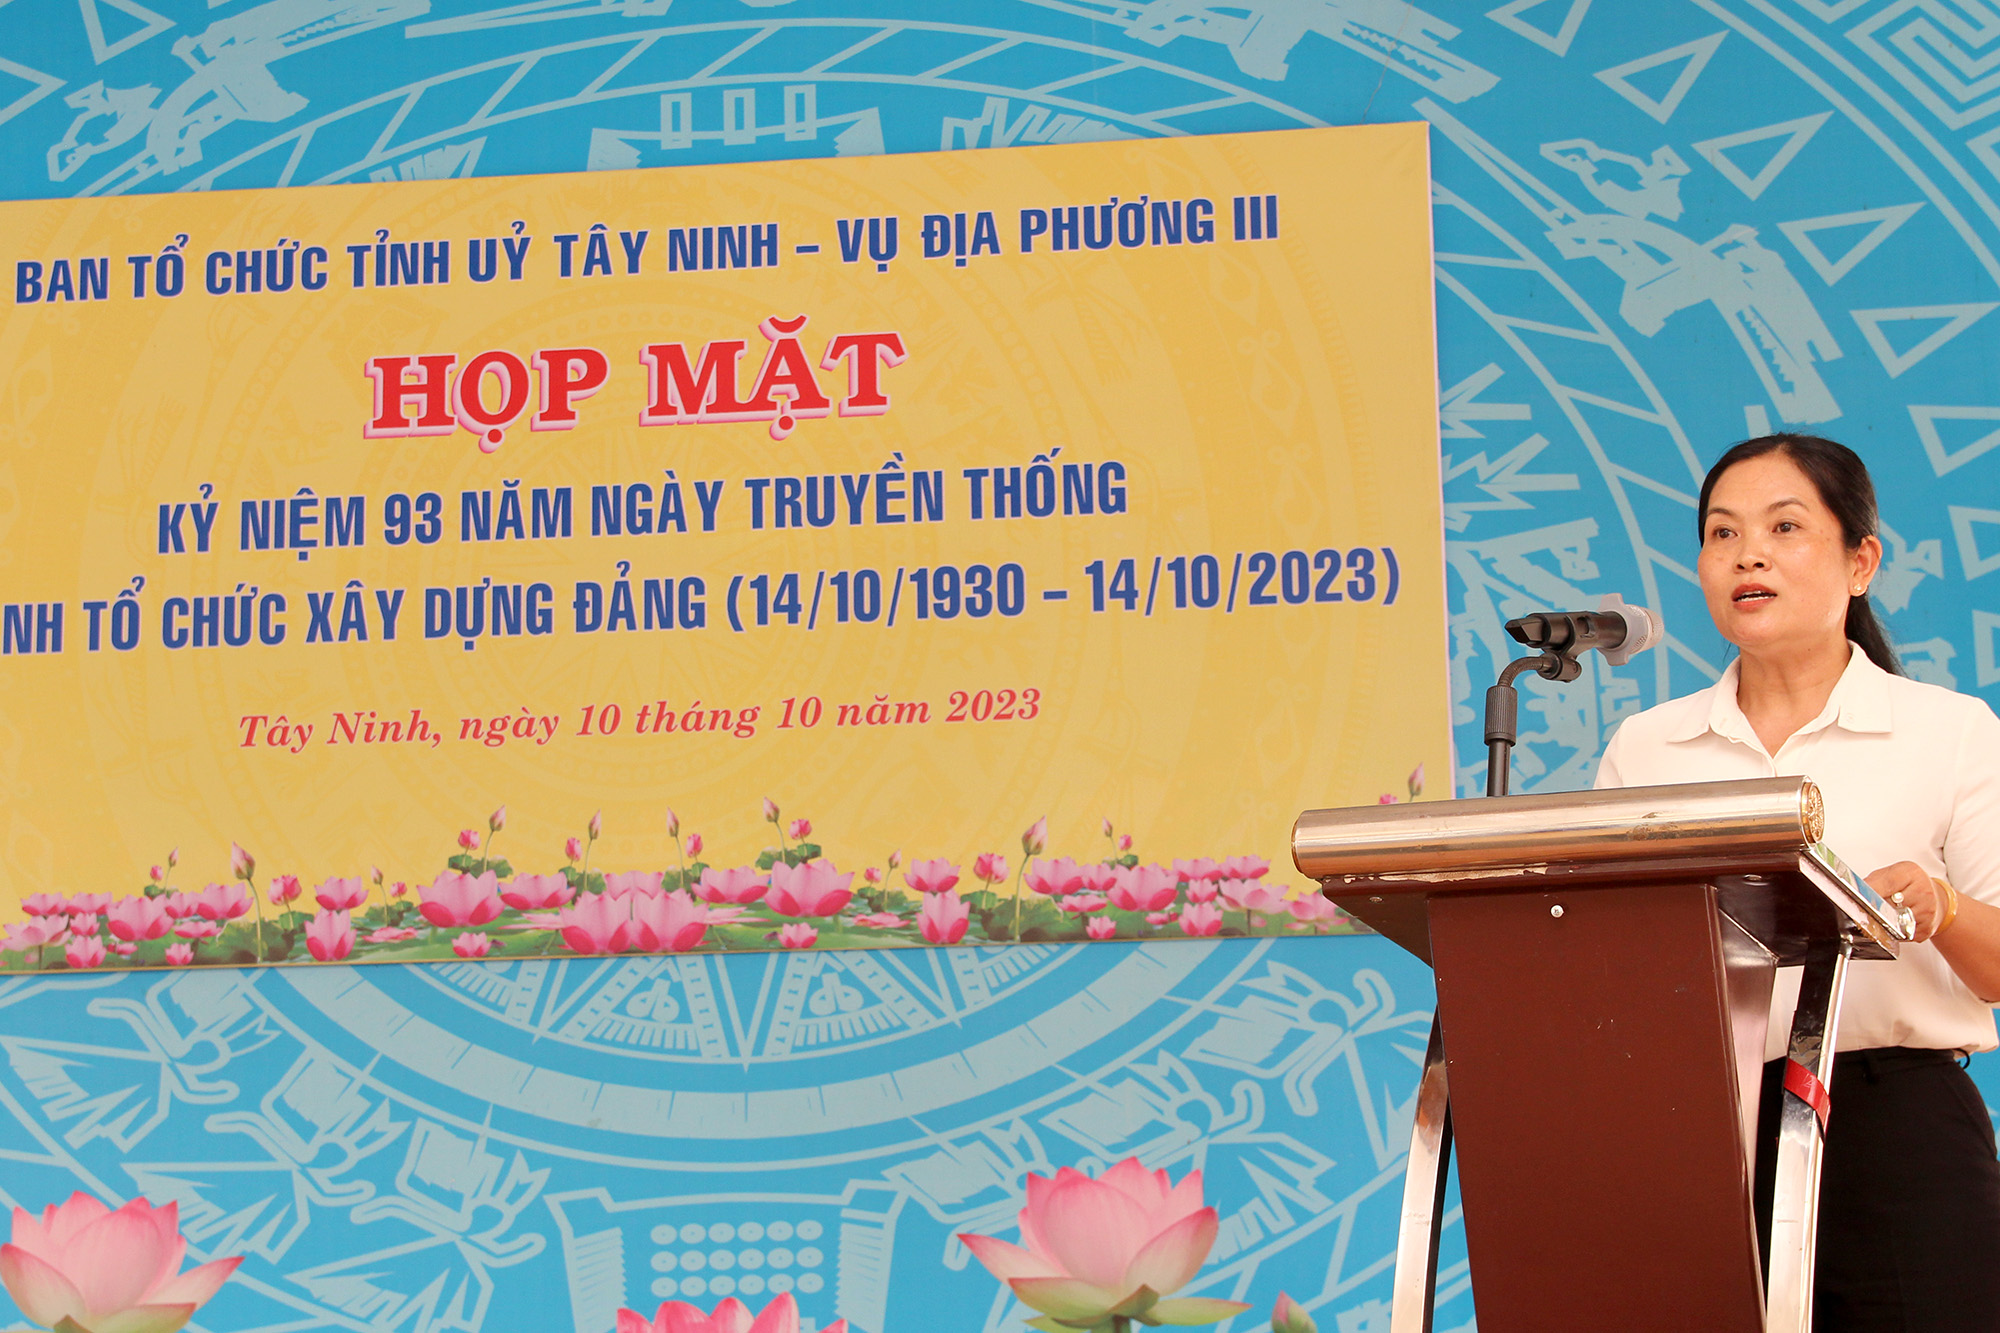 Đồng chí Trần Thị Thanh Hằng – Phó Trưởng Ban Thường trực Ban Tổ chức Tỉnh ủy Tây Ninh phát biểu tại Căn cứ Ban An ninh Trung ương Cục miền Nam (Ảnh: H.Hào).